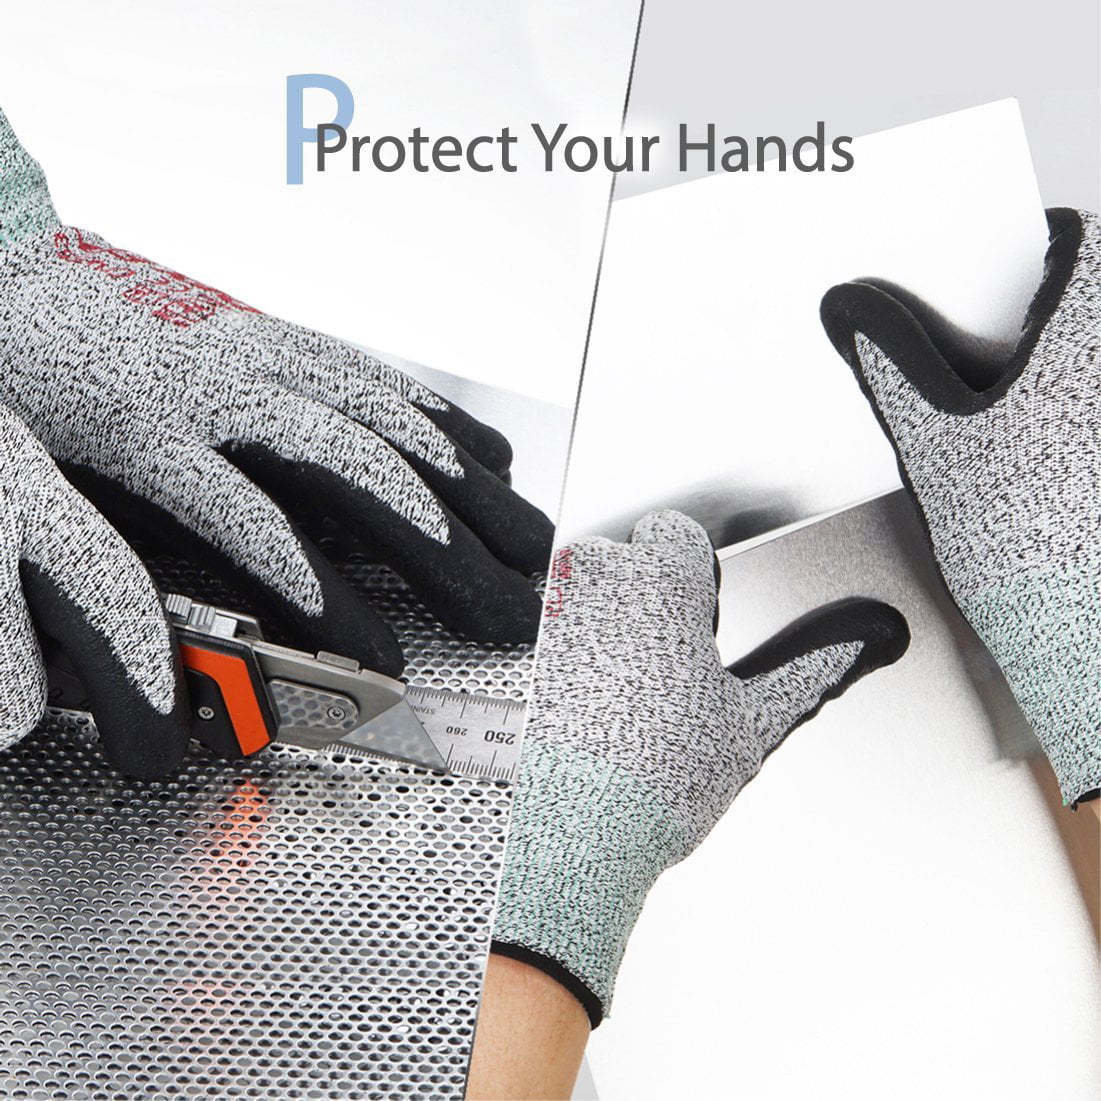 3D Comfort Stretch Fit DEX FIT Level 5 Cut Resistant Gloves Cru553 Durable...